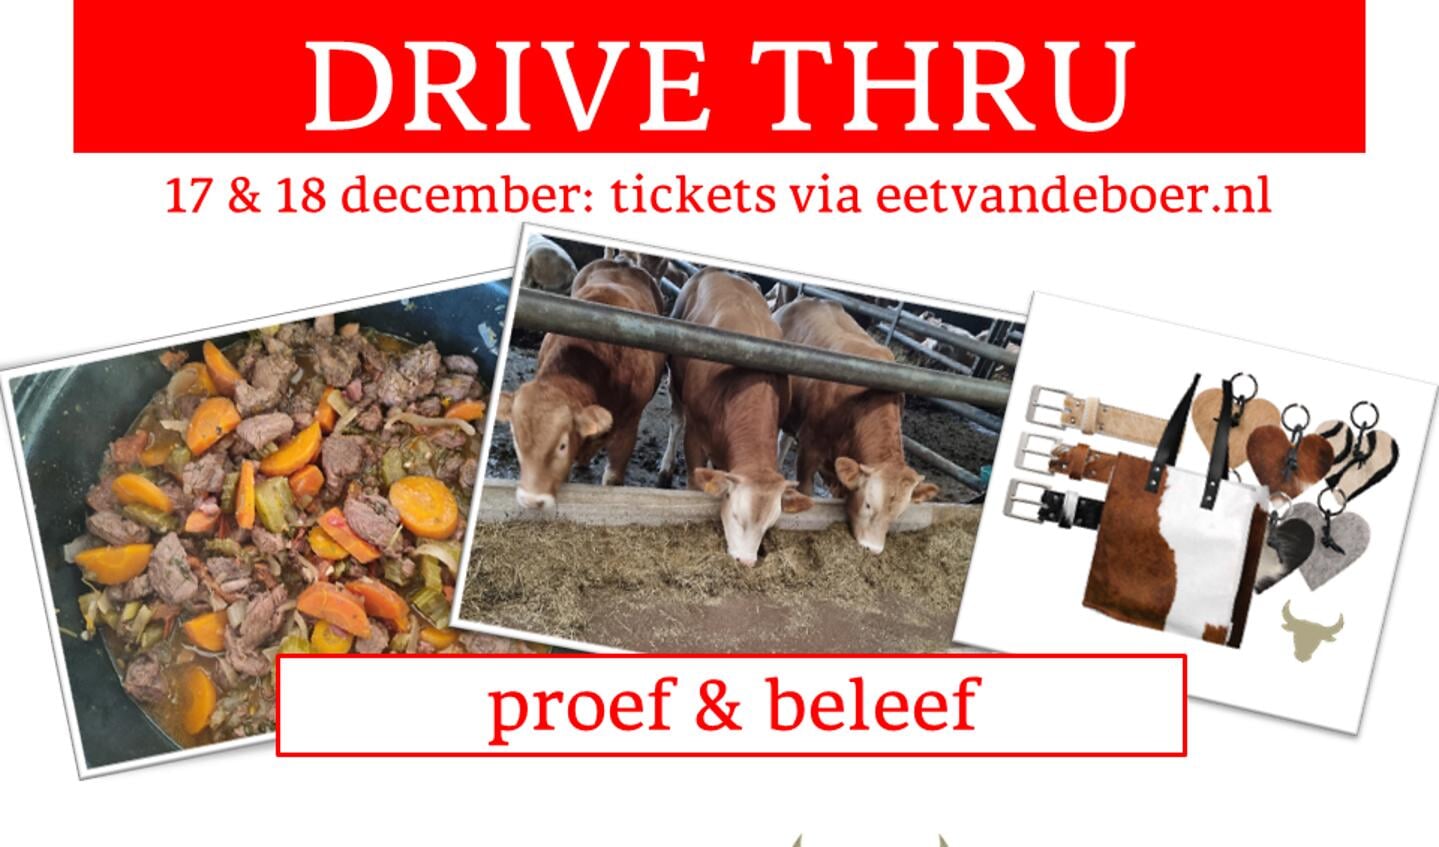 Drive-thru HOOGENRAAD veehouderij | Eetvandeboer.nl